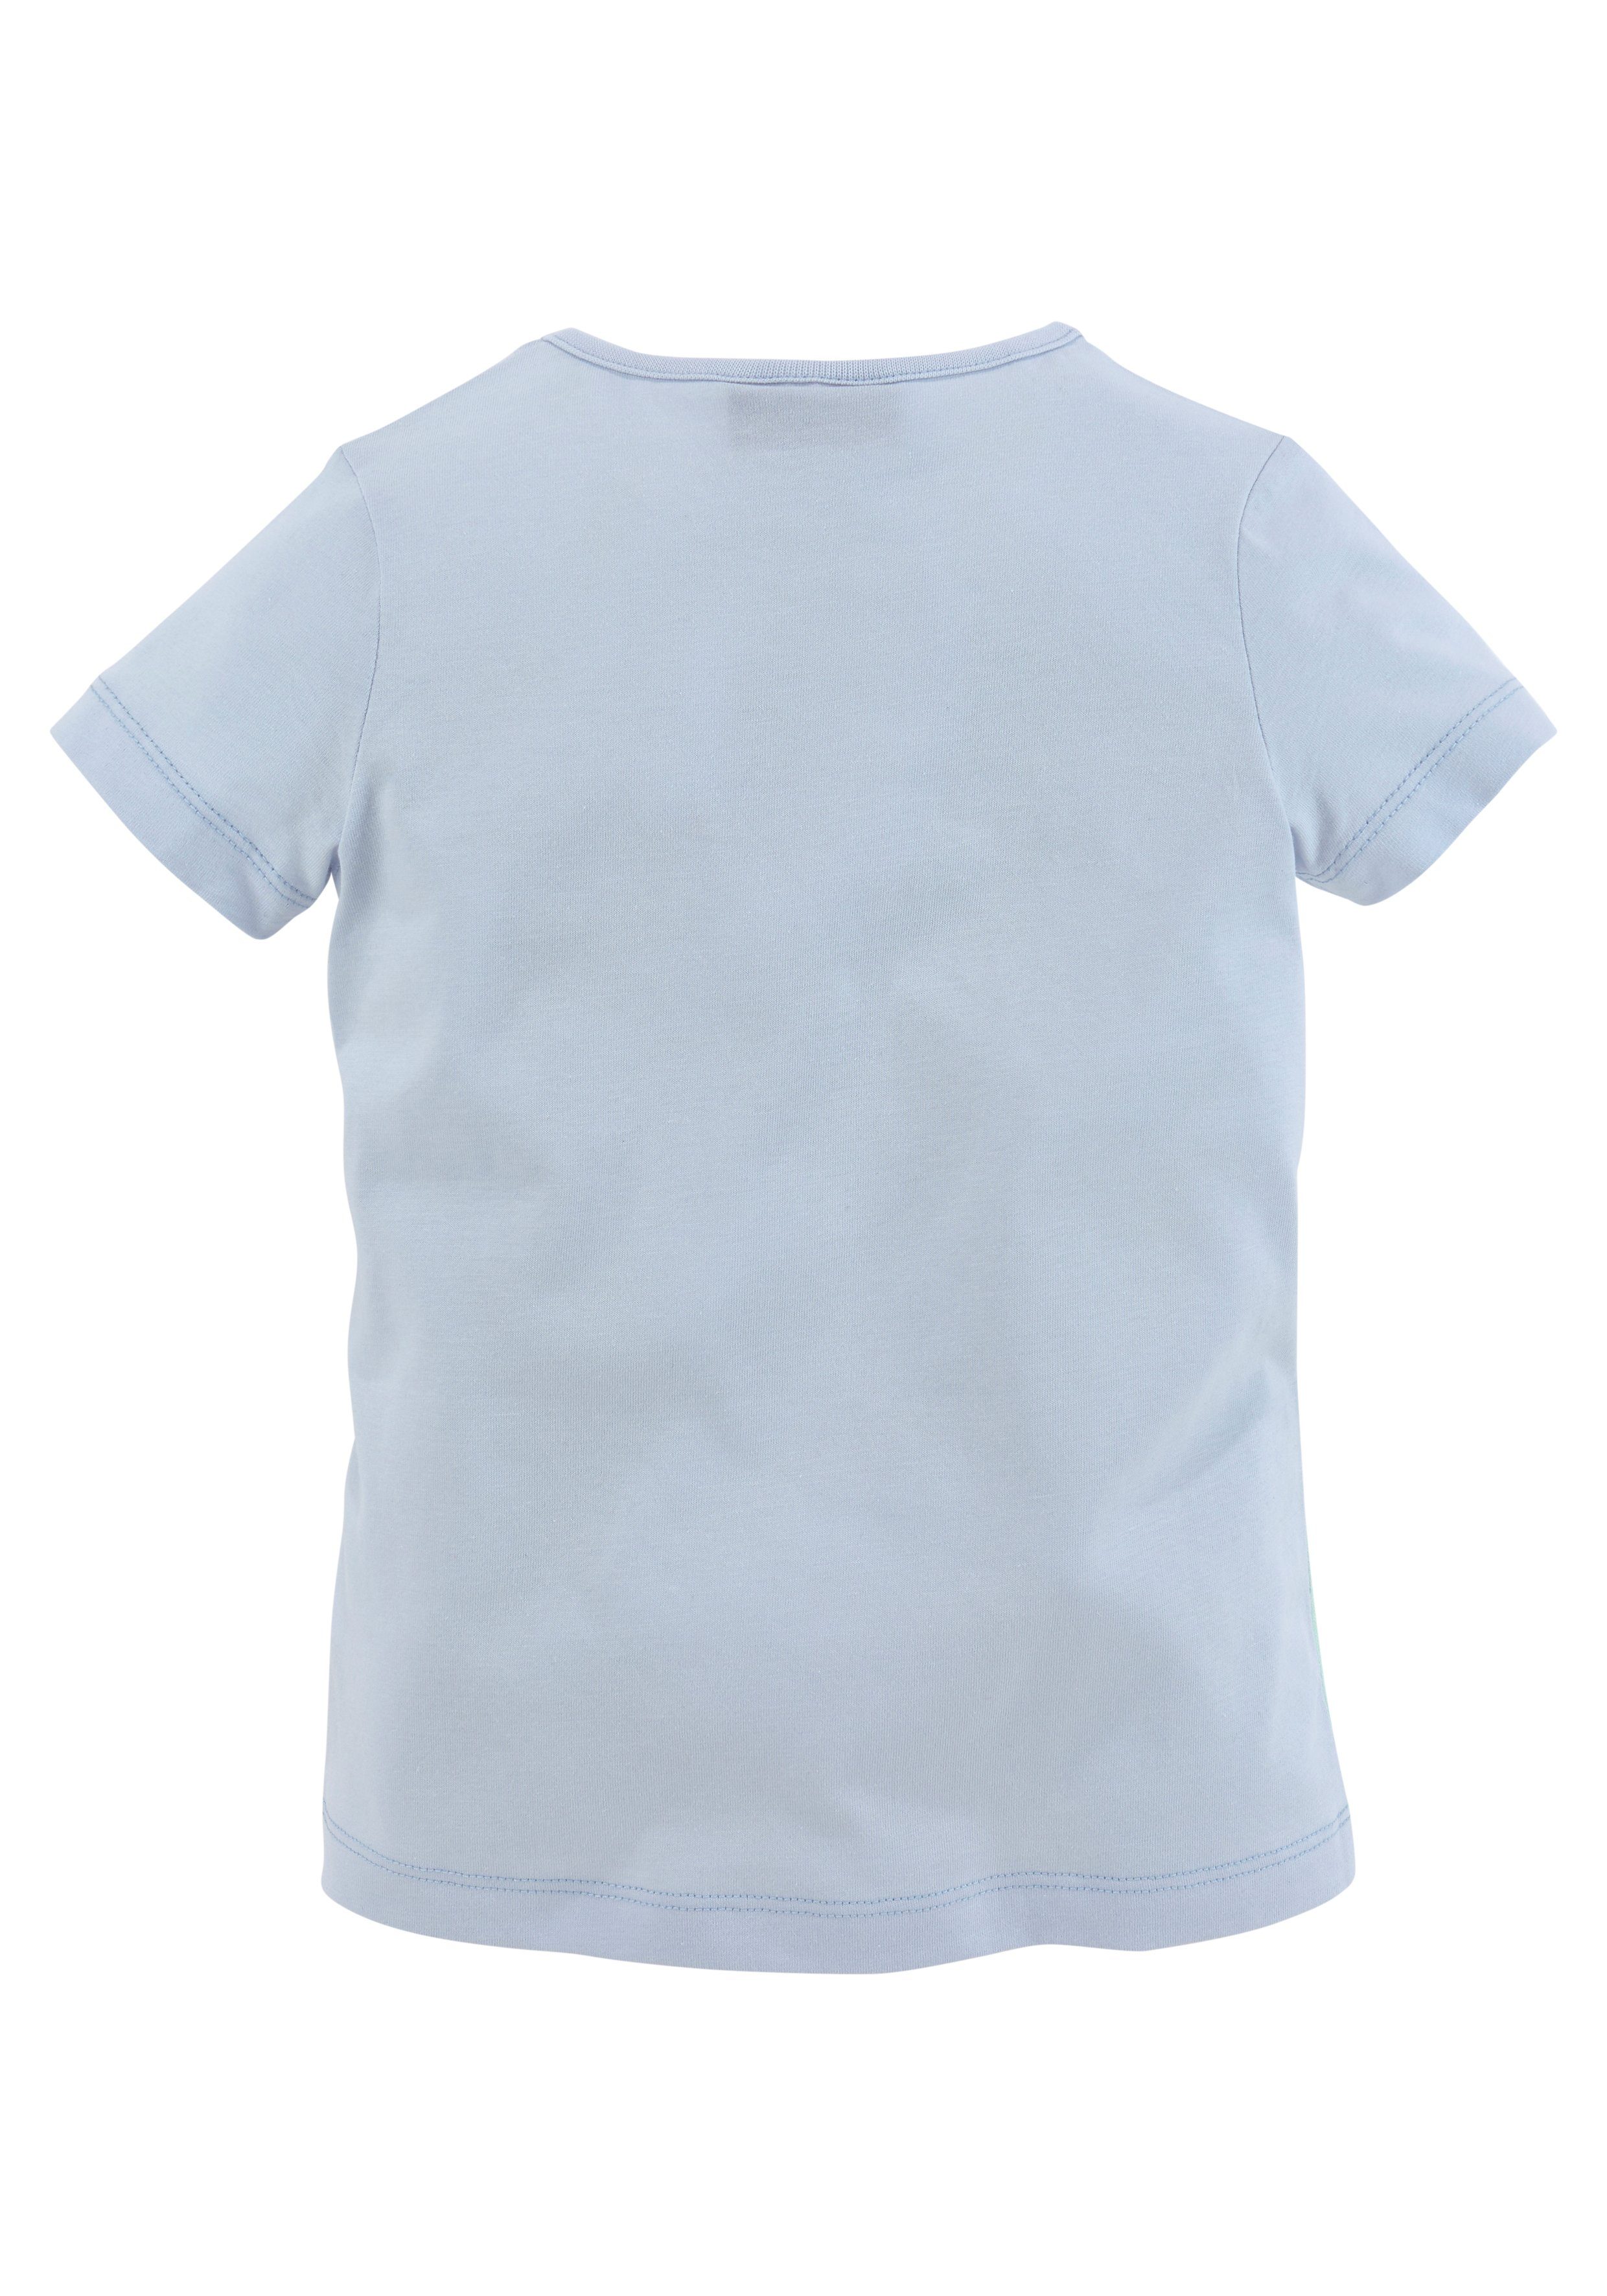 Miss Melody T-Shirt mit schönem Pferdemotiv hellblau